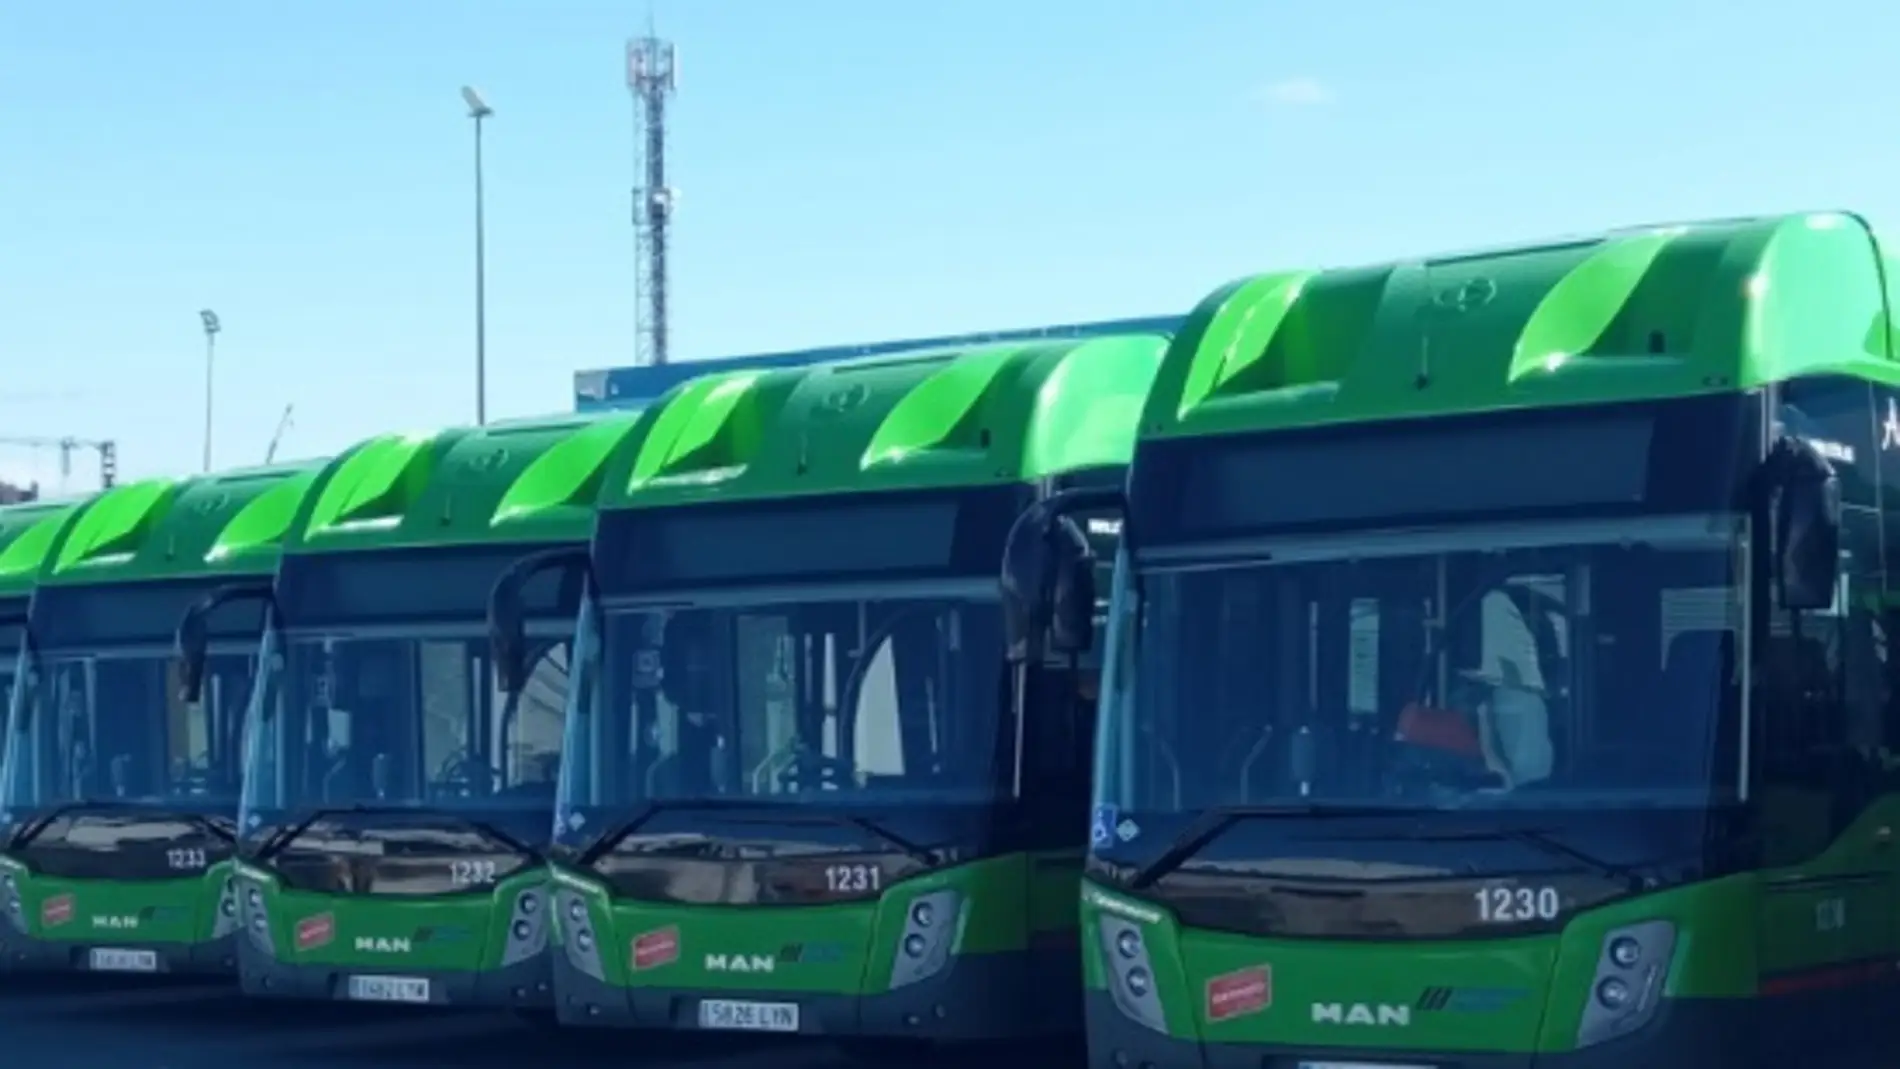 Huelga indefinida en los autobuses interurbanos en Madrid: fechas, líneas afectadas y servicios mínimos